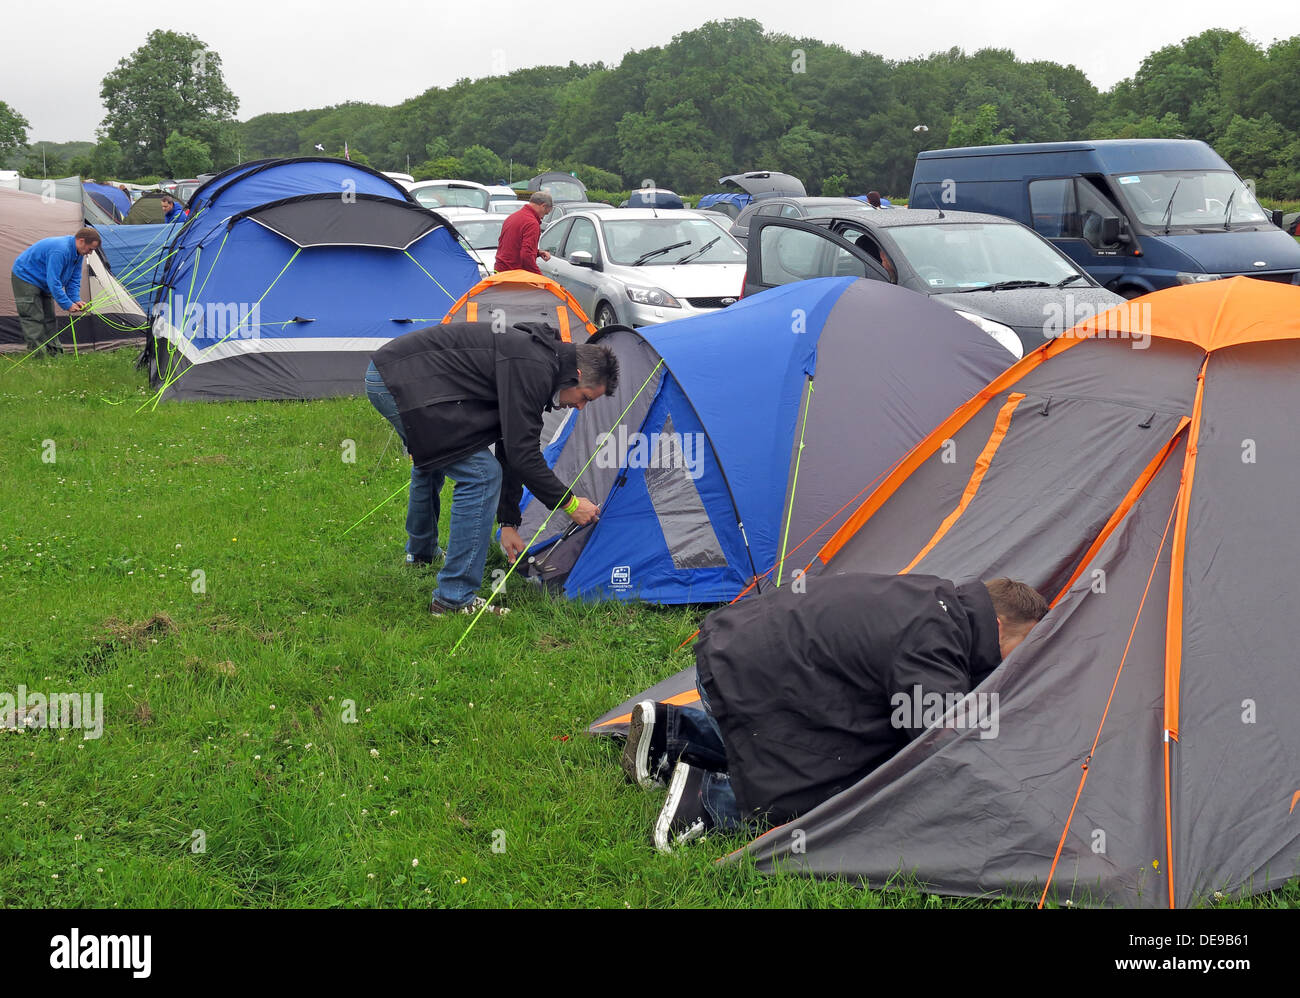 Campeurs heureux d'ériger une tente dans le cadre d'un festival ou un événement sportif (Grand Prix de F1) Banque D'Images